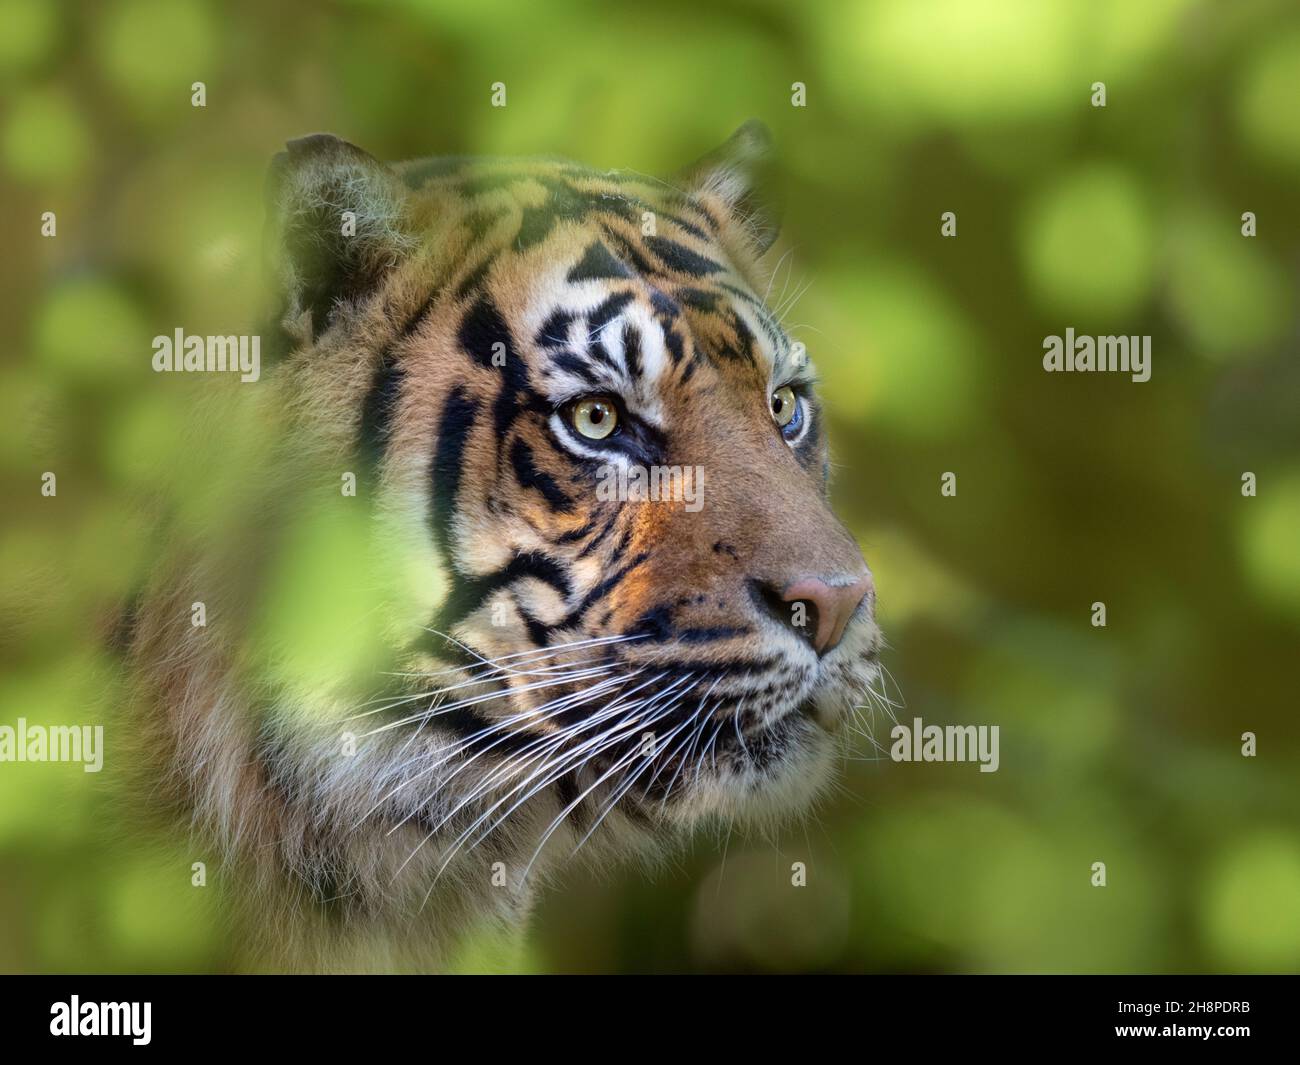 Sumatran tiger Panthera tigris sondaica Stock Photo